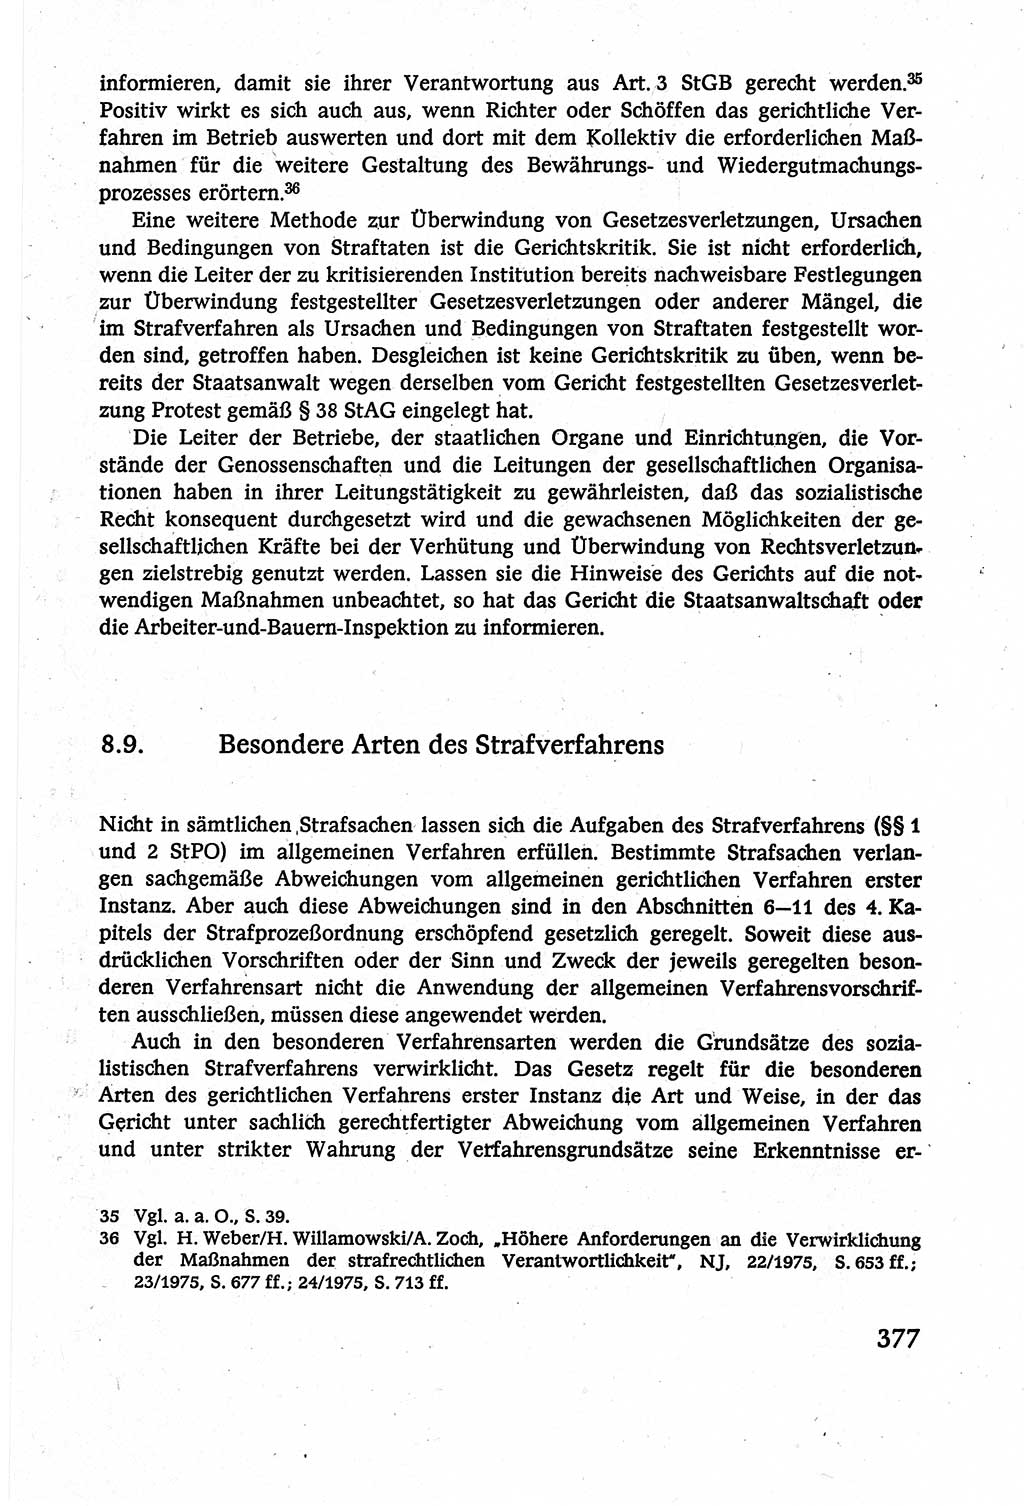 Strafverfahrensrecht [Deutsche Demokratische Republik (DDR)], Lehrbuch 1977, Seite 377 (Strafverf.-R. DDR Lb. 1977, S. 377)